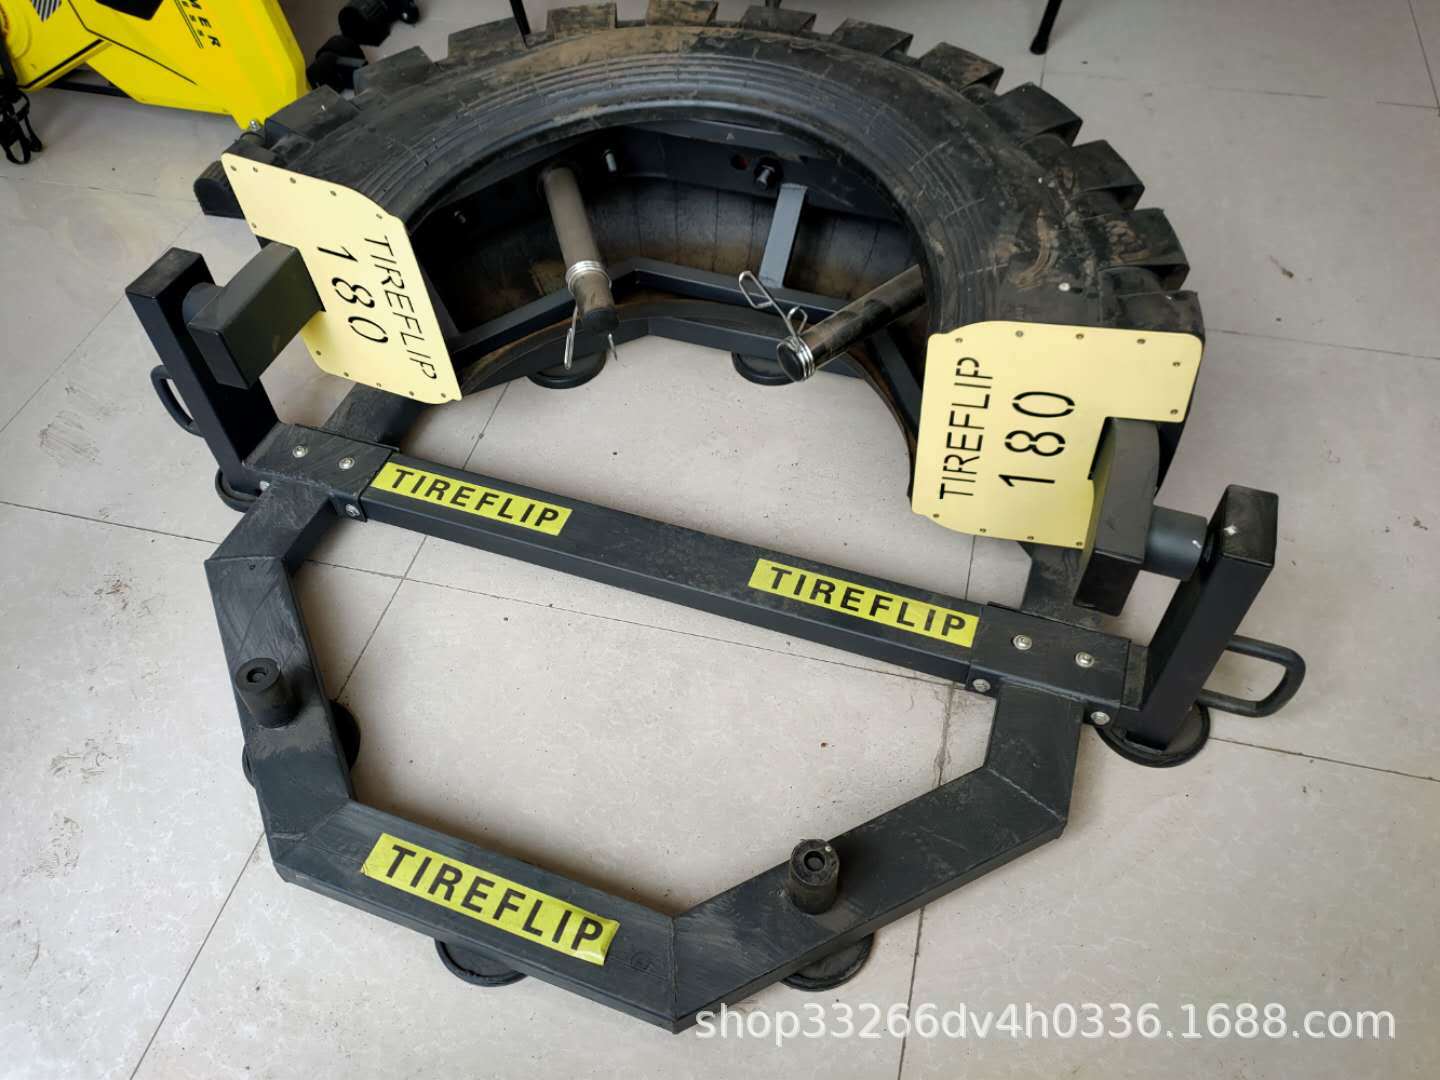 廠家批發商用半月大型翻轉輪胎體能力量訓練器械爆發力翻滾輪胎機